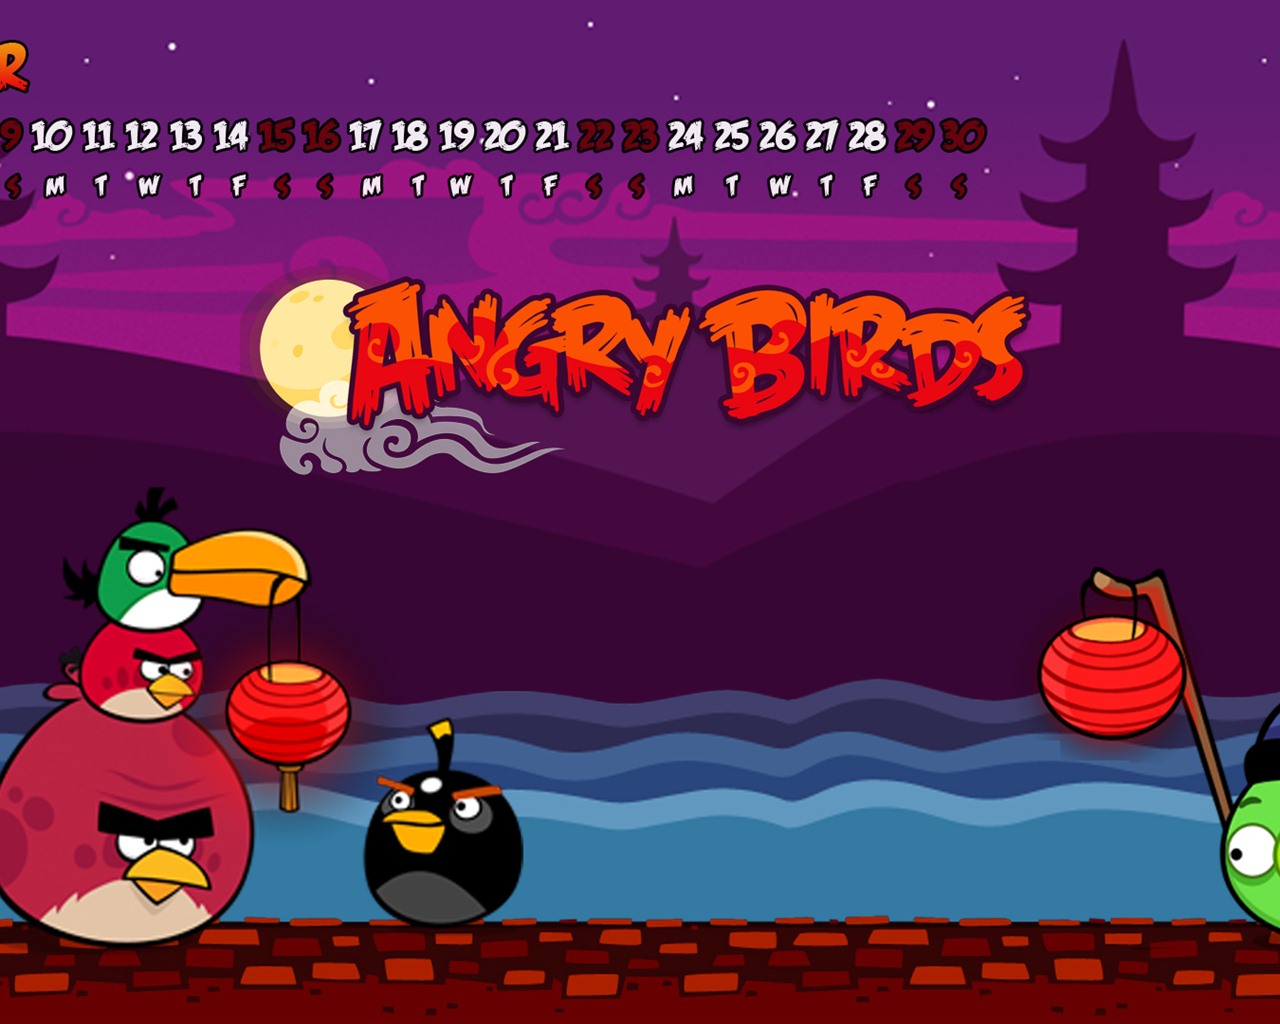 Angry Birds 2012 calendario fondos de escritorio #12 - 1280x1024